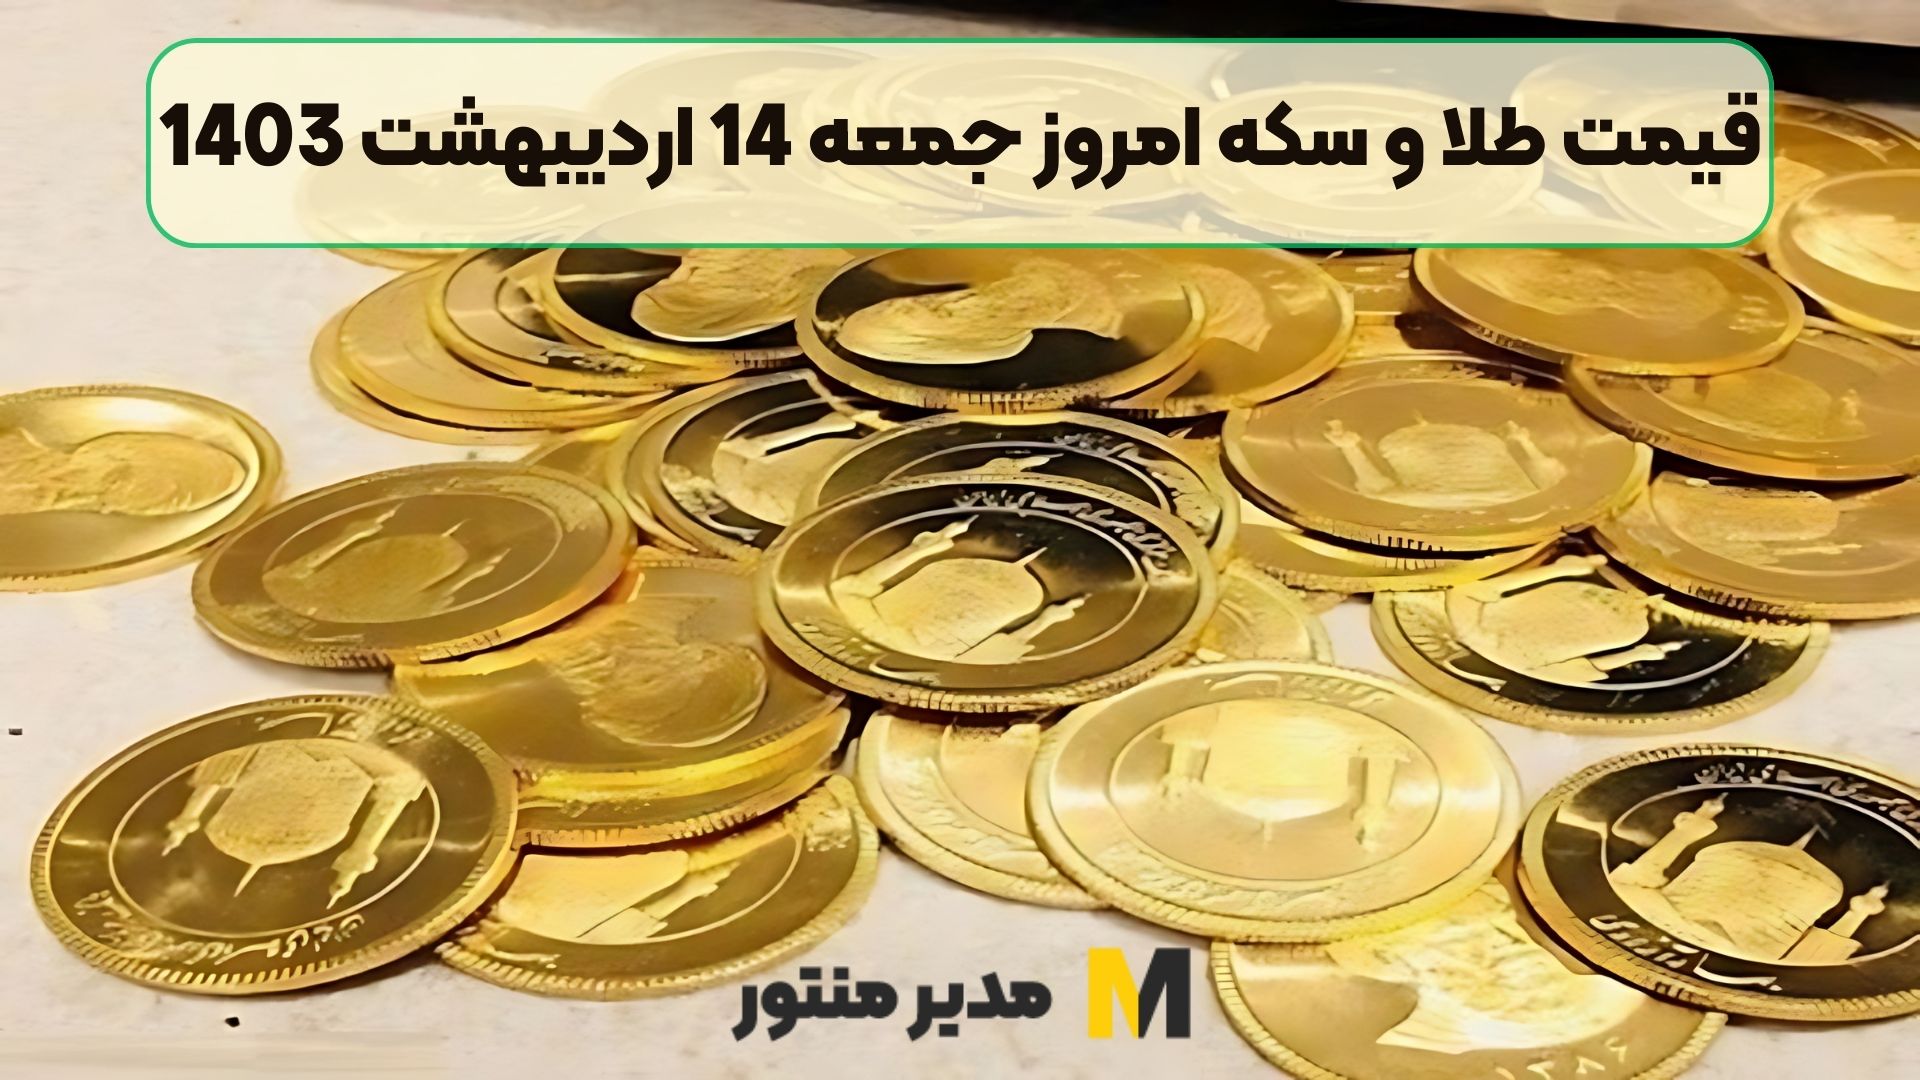 قیمت طلا و سکه امروز جمعه 14 اردیبهشت 1403